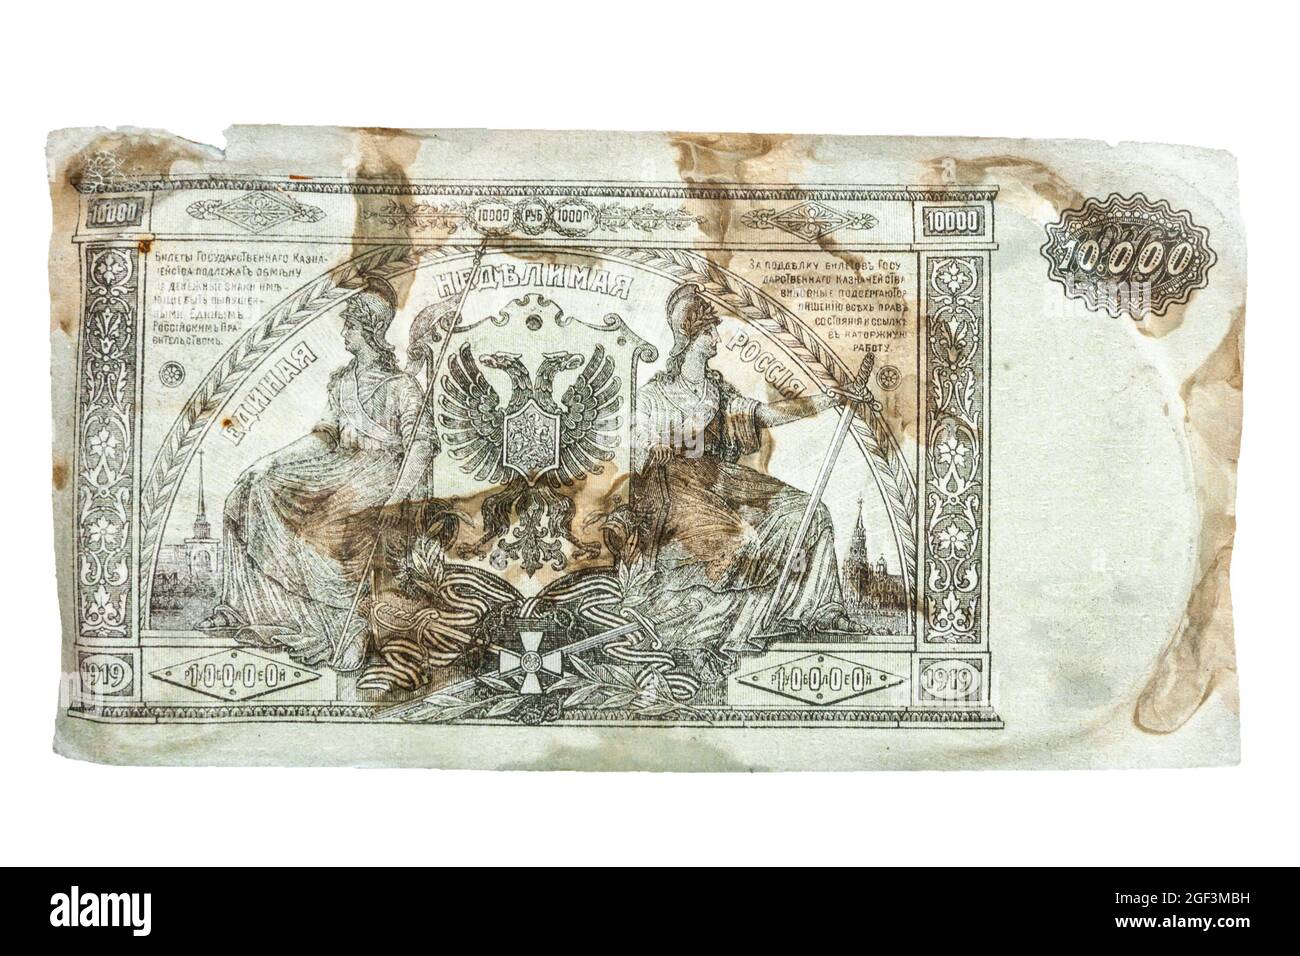 Banknote 10000 Rubel, Russland, Papierwährung Ausgabe 1919, herausgegeben von Denikins Streitkräfte Südrusslands in den Jahren 1919-1920, Russischer Bürgerkrieg, zerschlagen Stockfoto